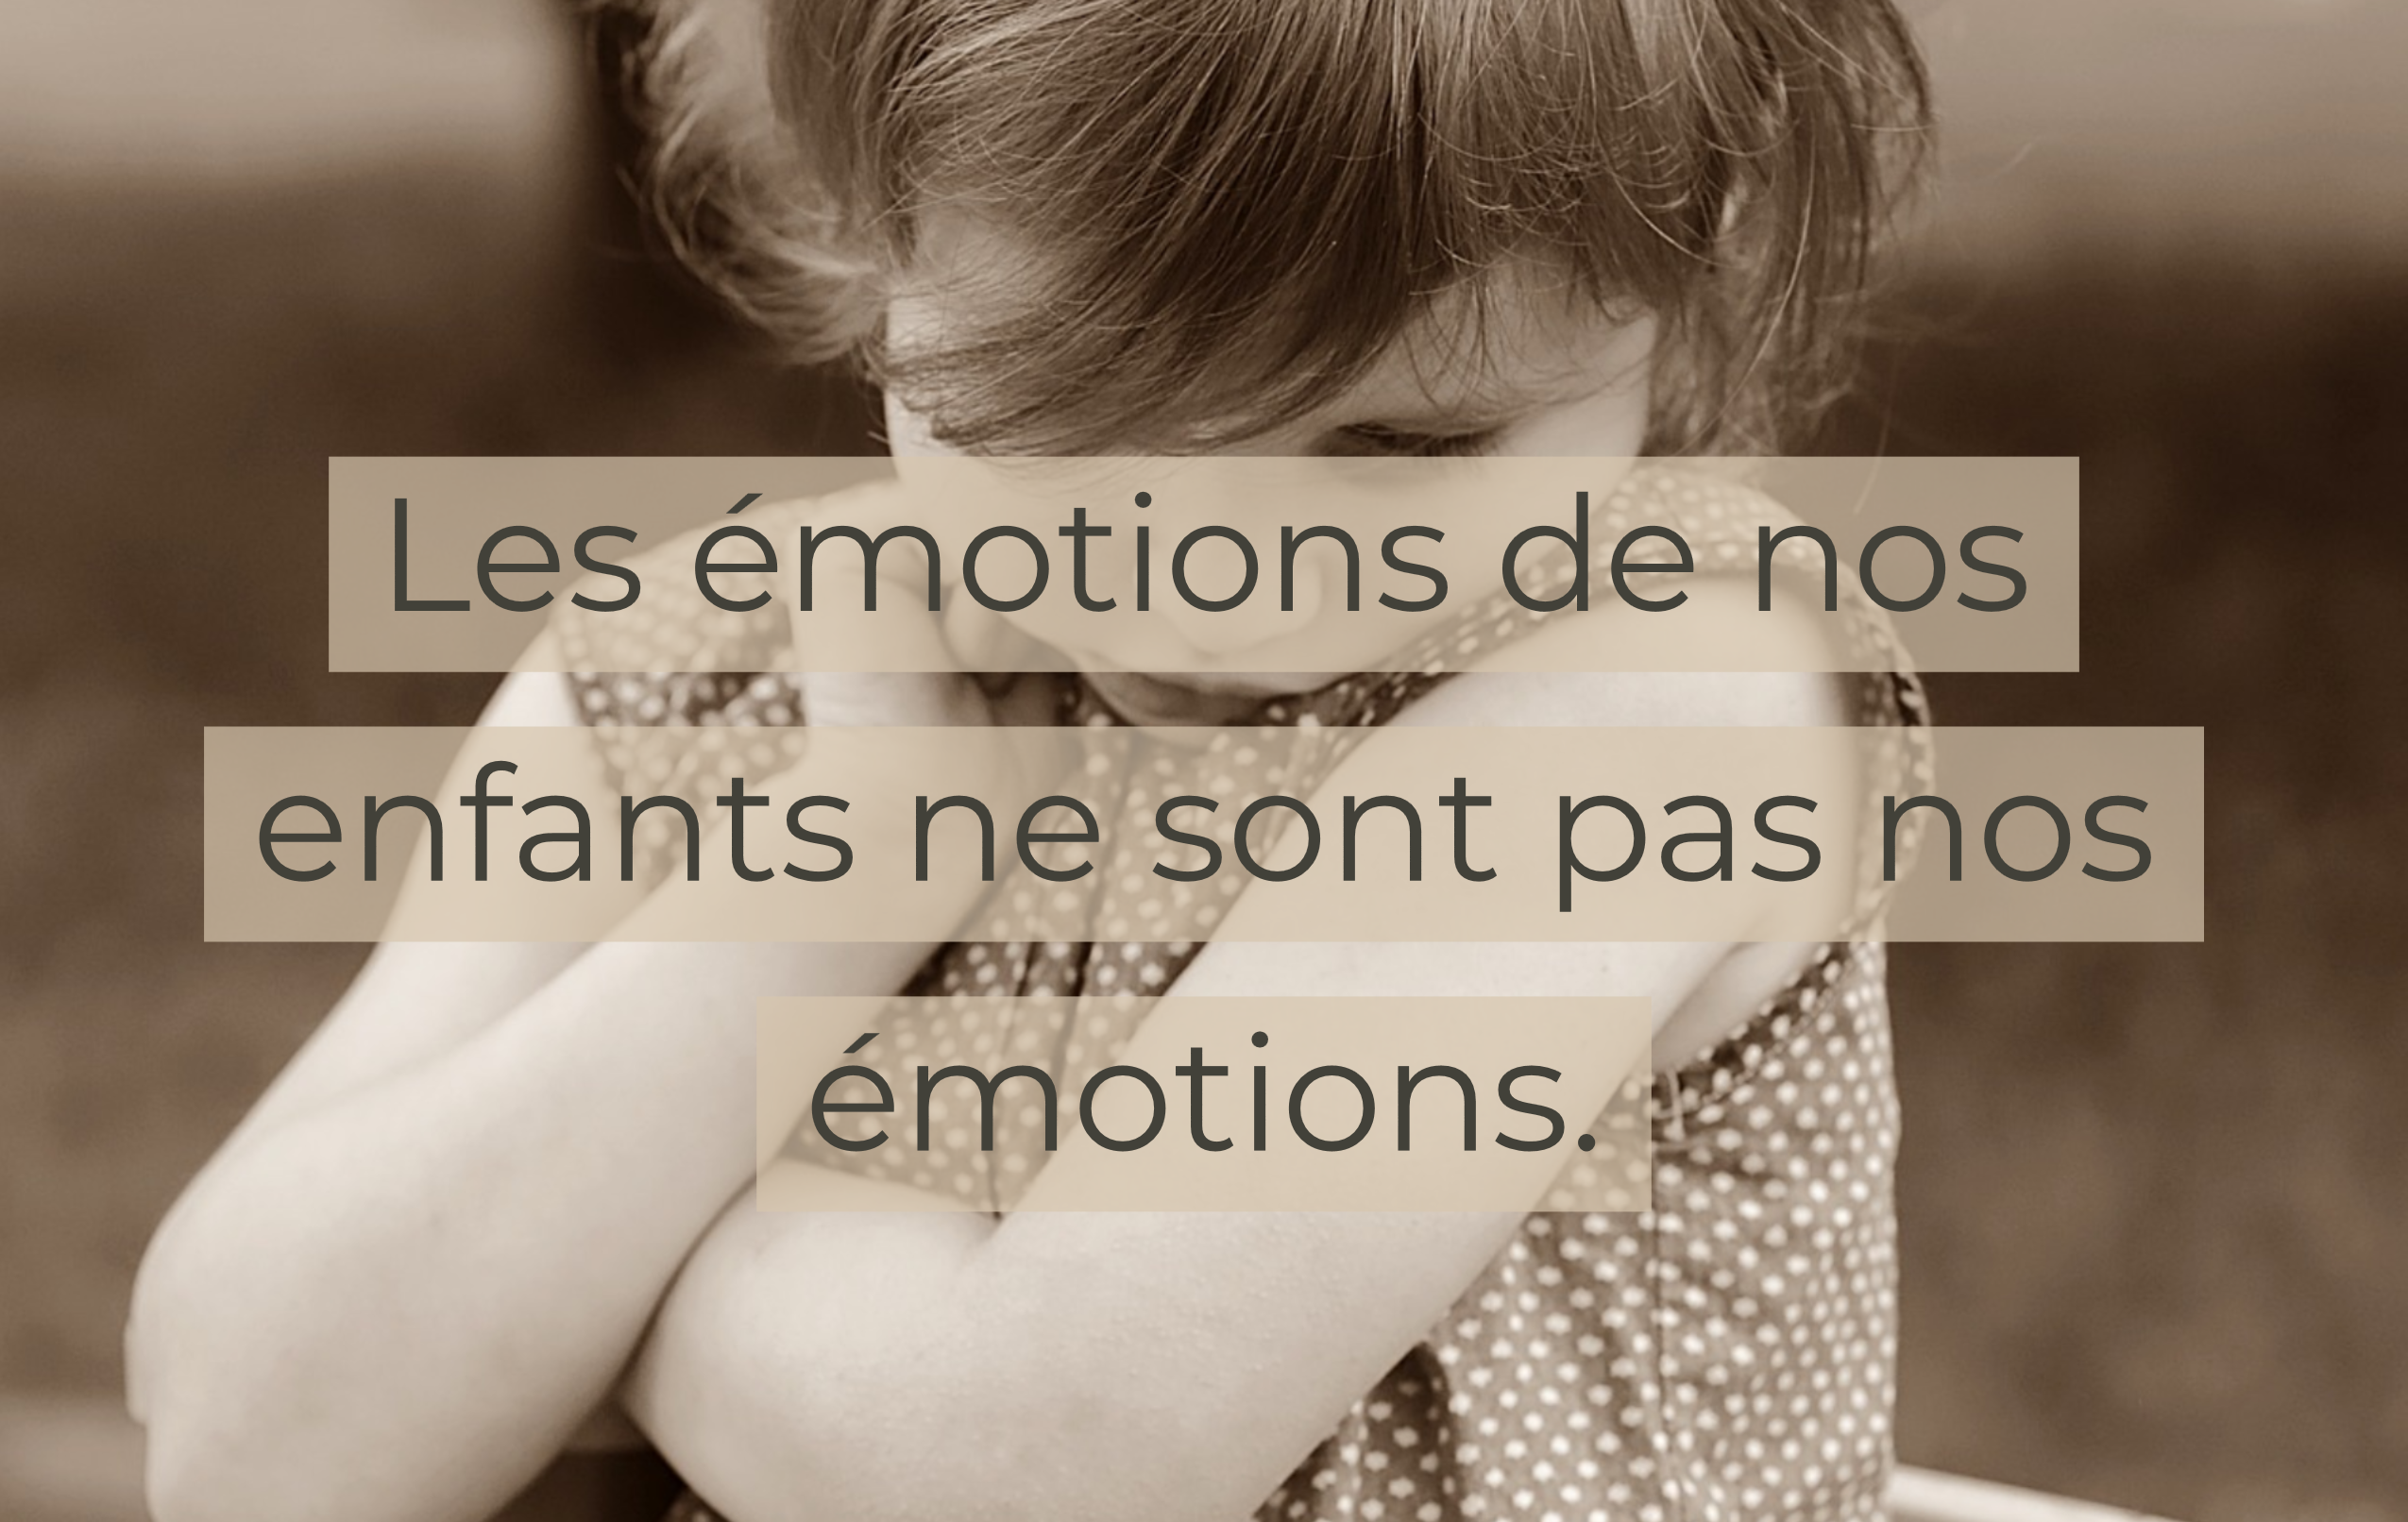 Les émotions de nos enfants ne sont pas nos émotions.